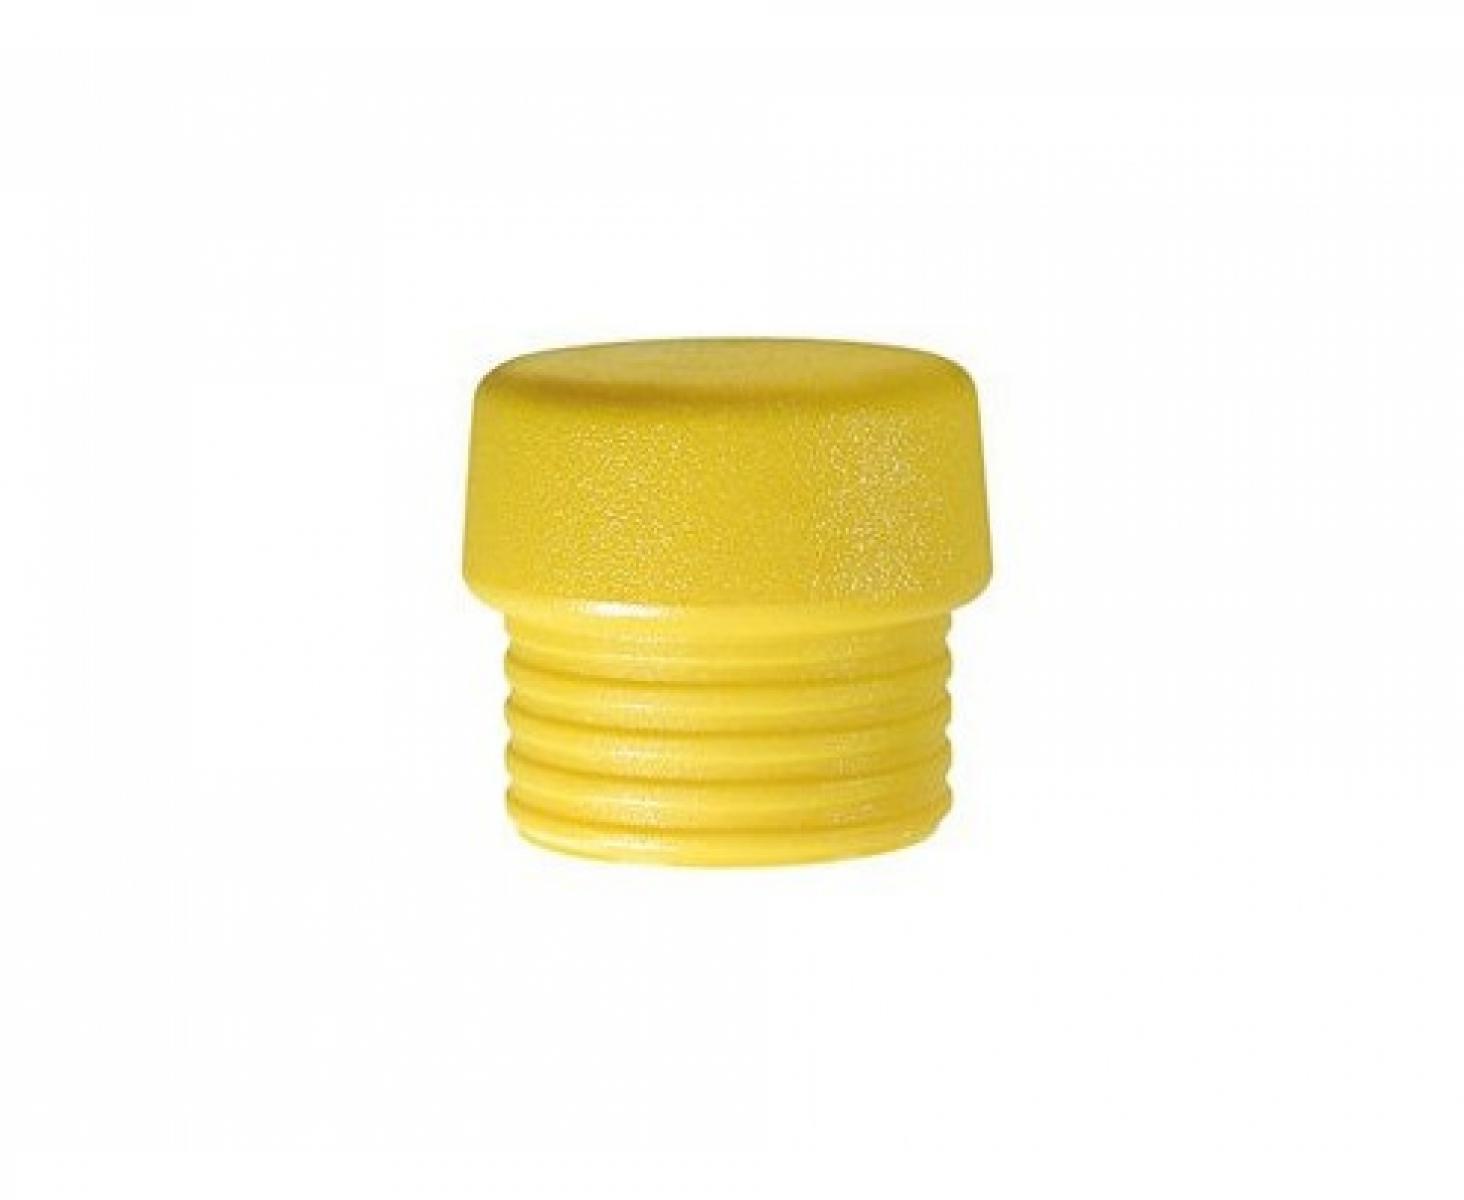 Головка желтая для молотка Wiha Safety 831-5 26429 из среднетвердого полиуретана